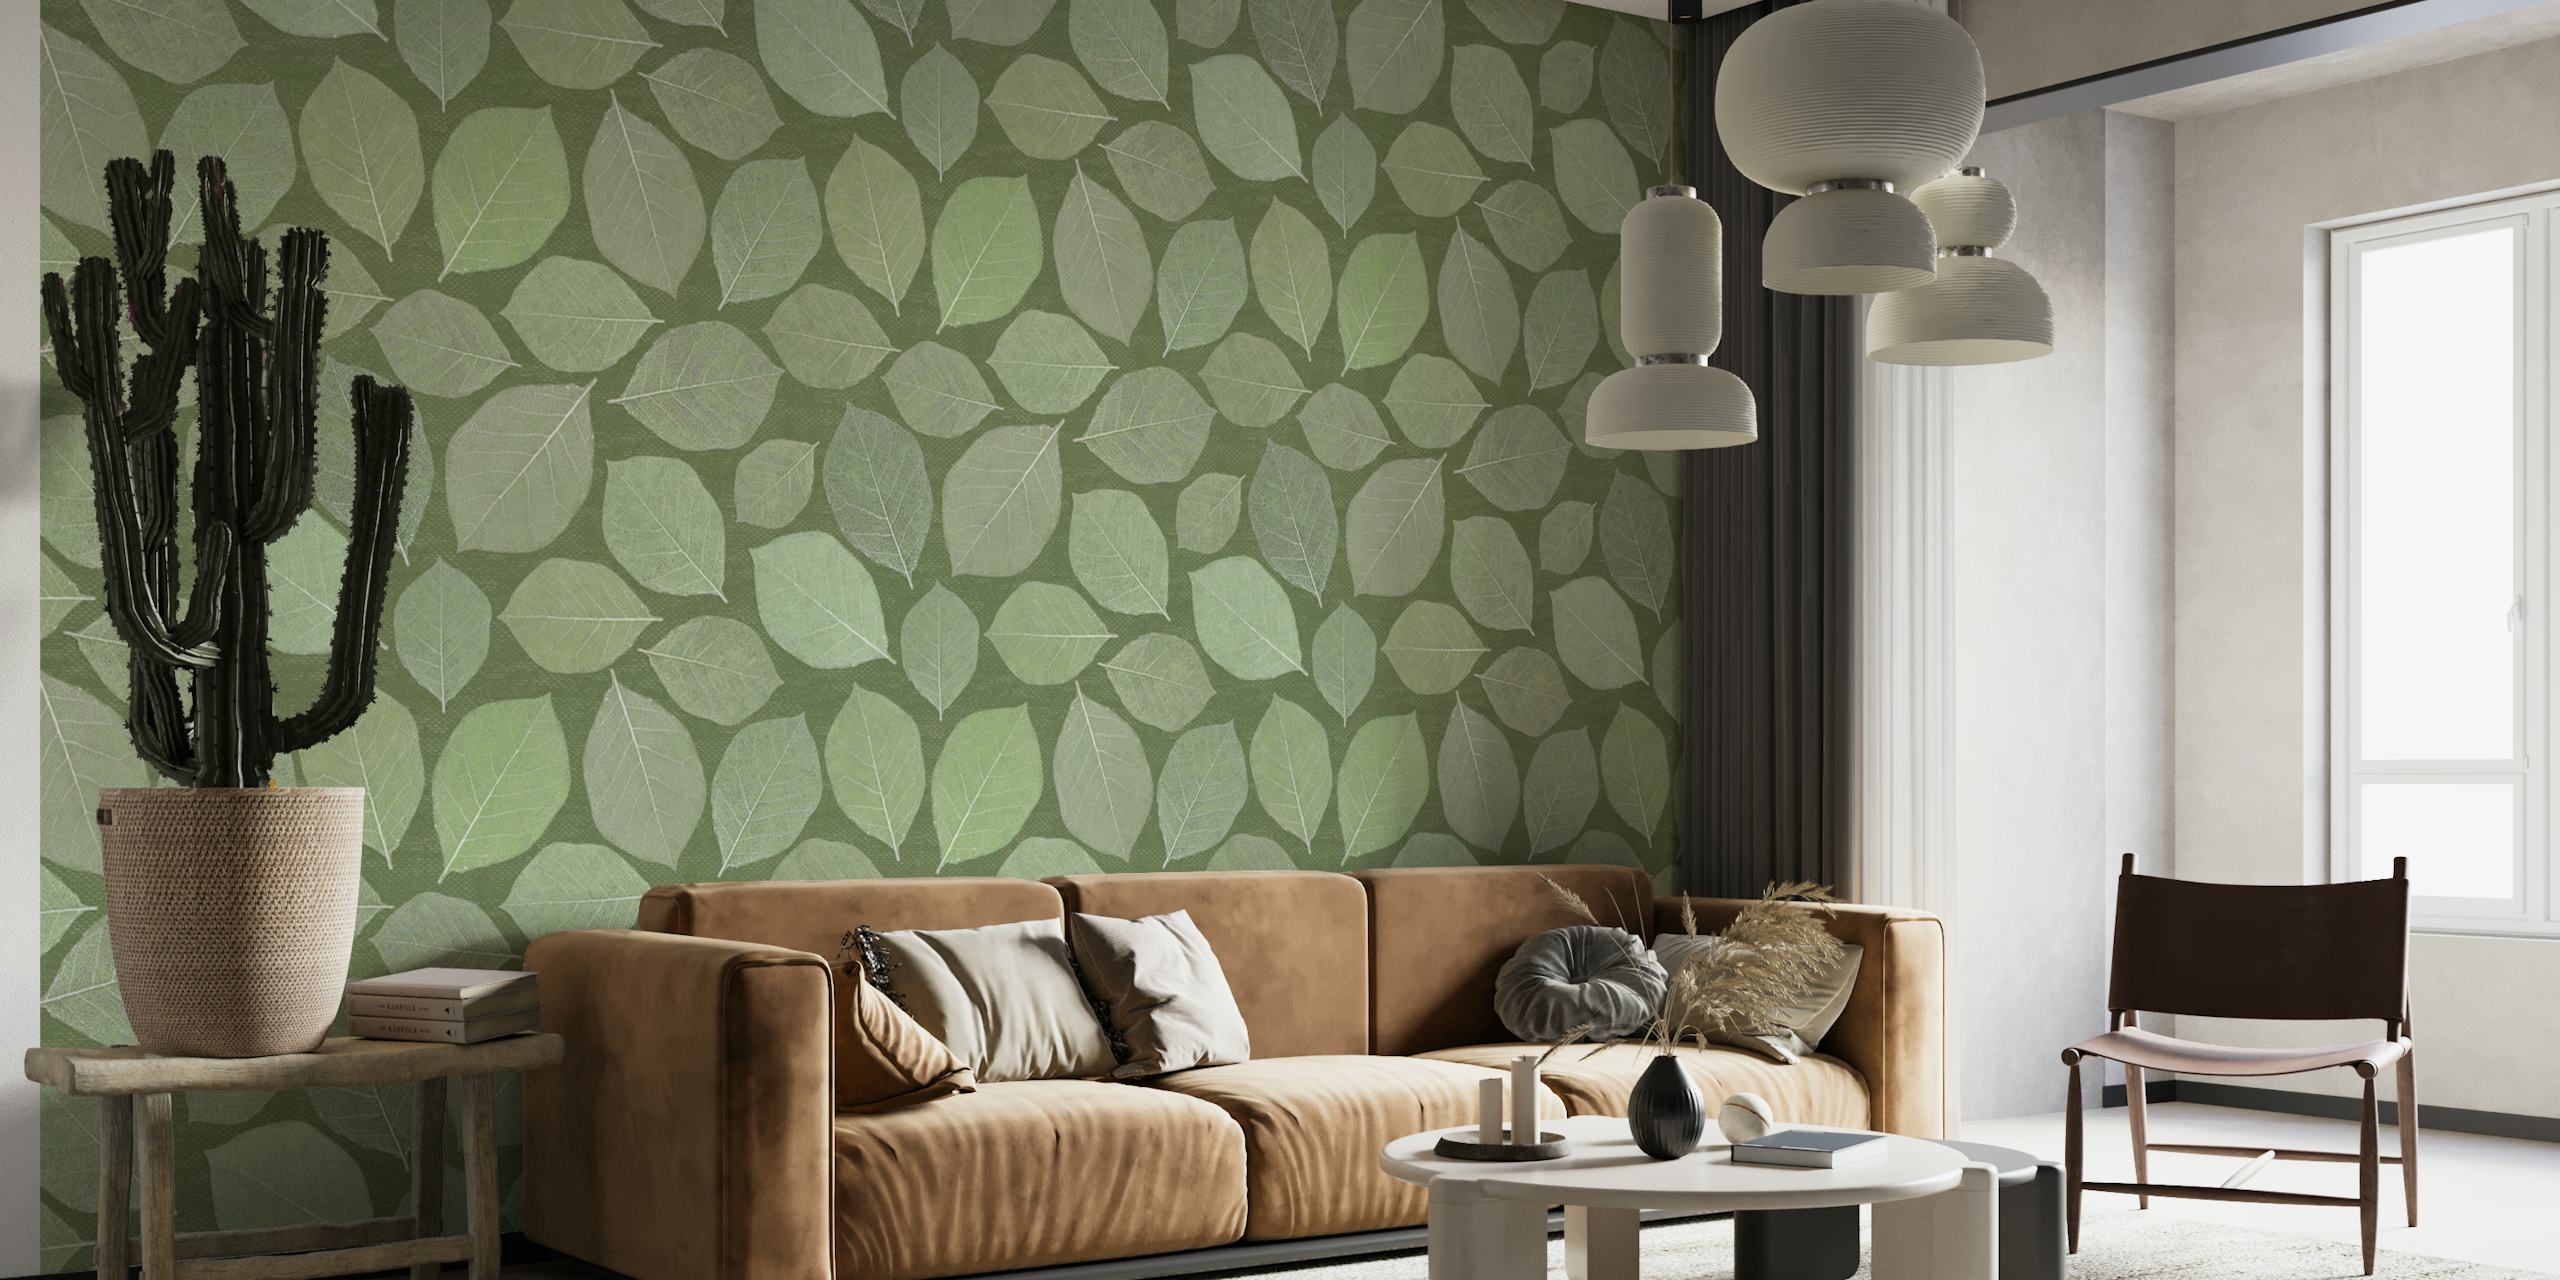 Fototapeta z listů magnólie v různých zelených odstínech ideální pro klidnou výzdobu interiéru